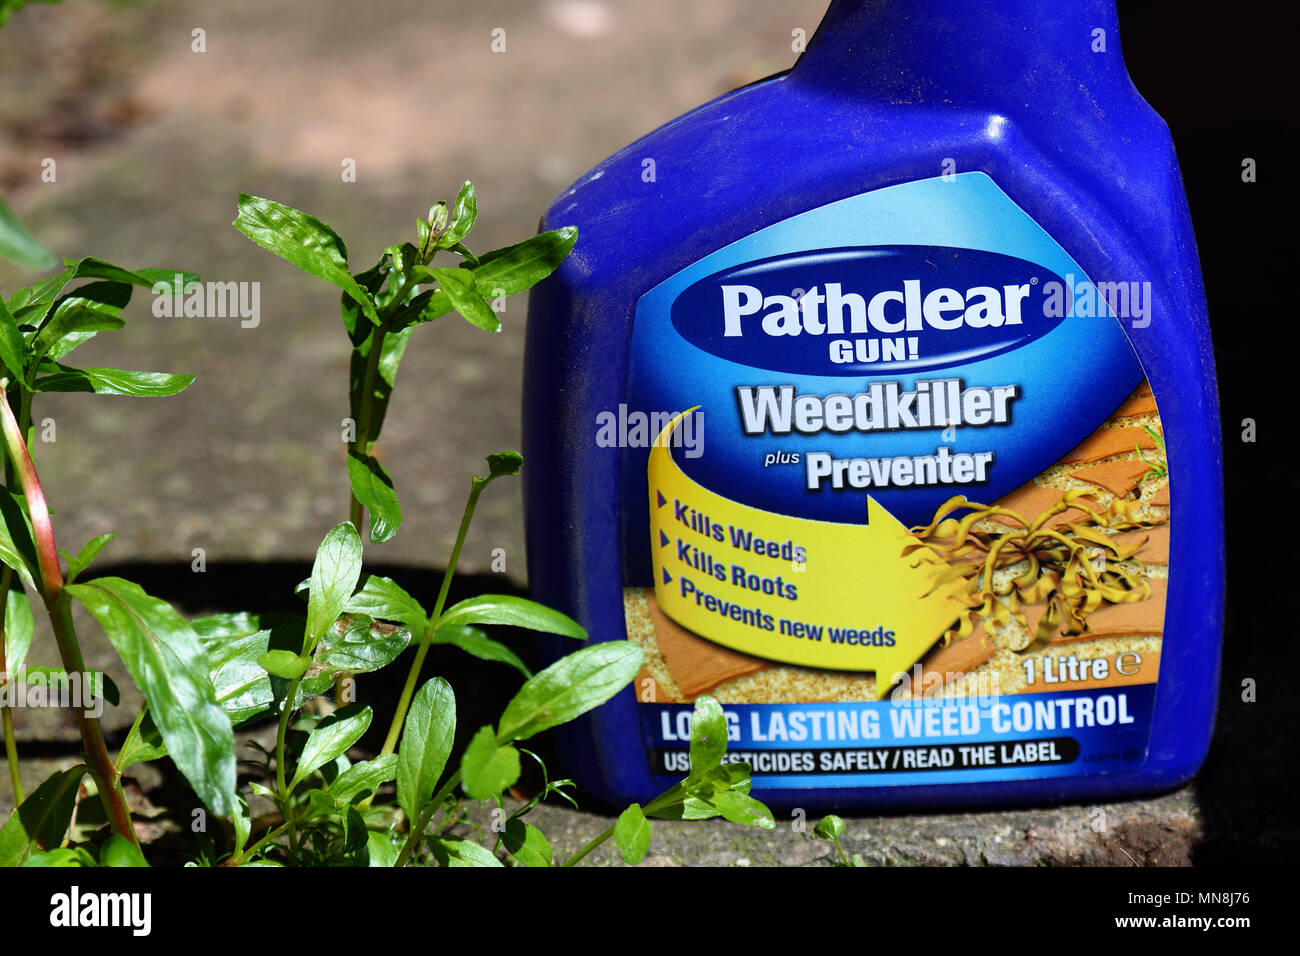 Sprayflasche Pathclear Unkrautvernichtungsmittel mit einem Unkraut wächst auf einem Garten Weg, 14. Mai 2018, redaktionelle Inhalte Stockfoto